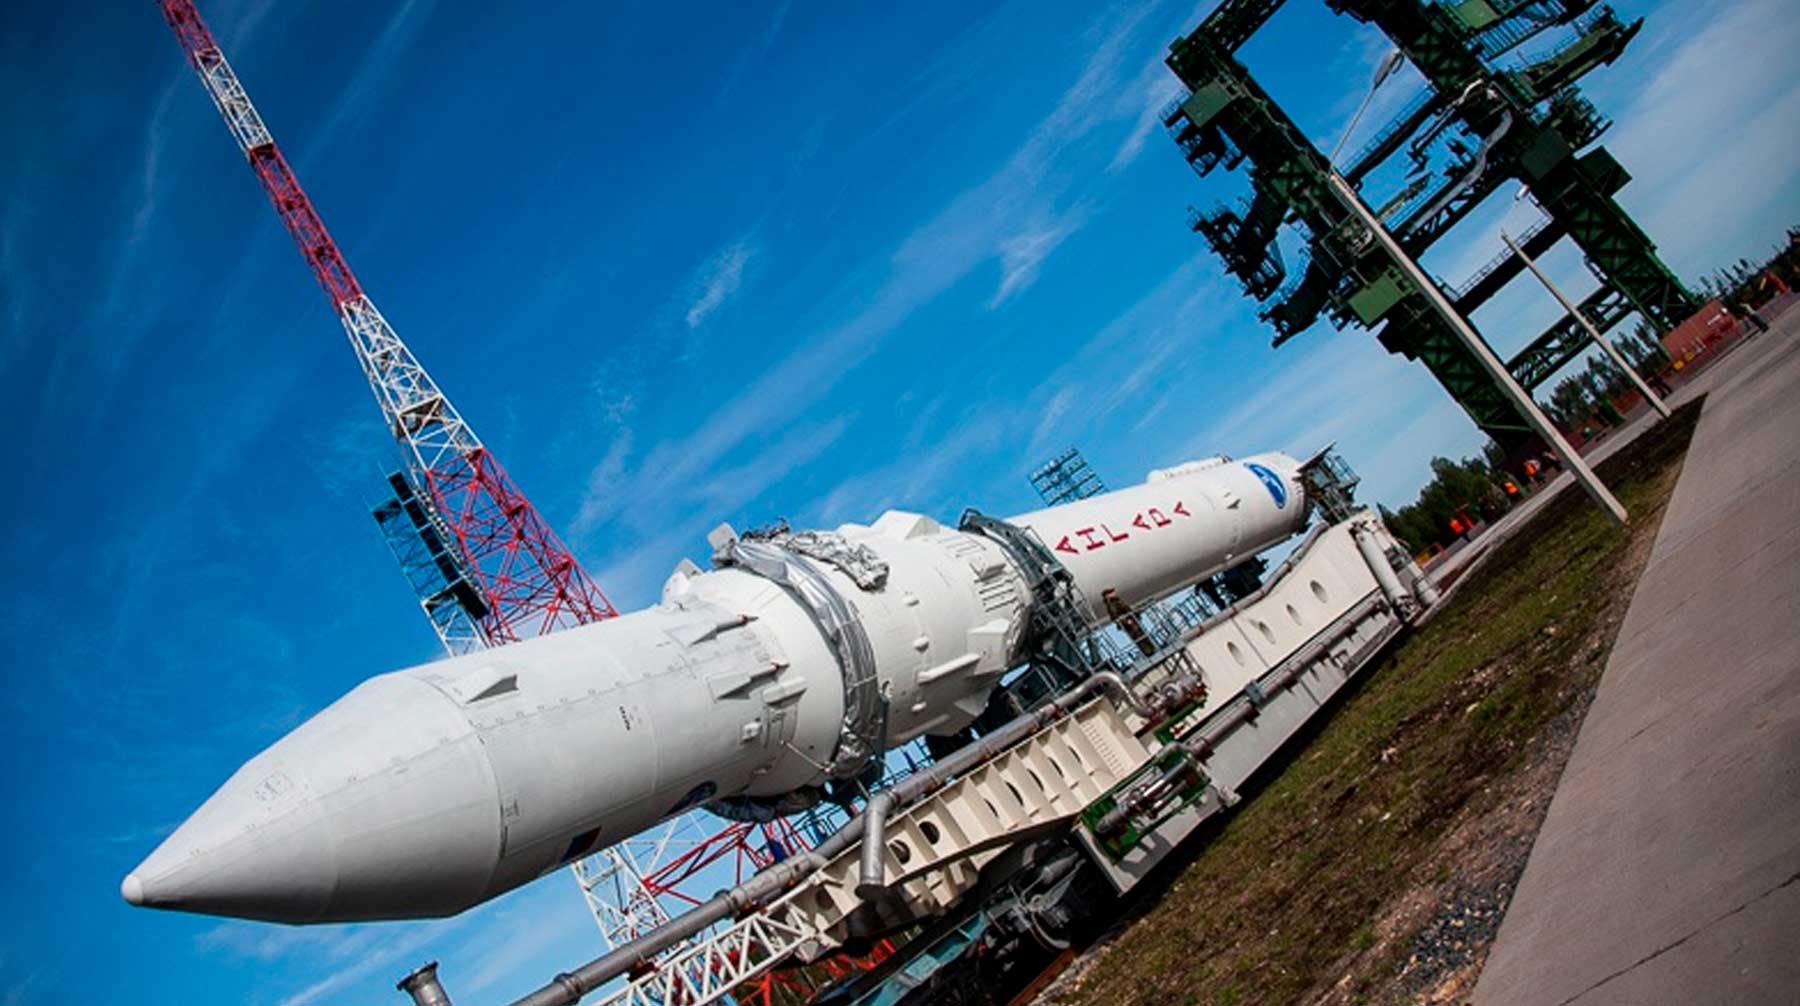 Госкорпорация отправила в 2019 году проект ракеты «Енисей», которую должны запустить в космос к 2028 году, на доработку Фото: © Роскосмос